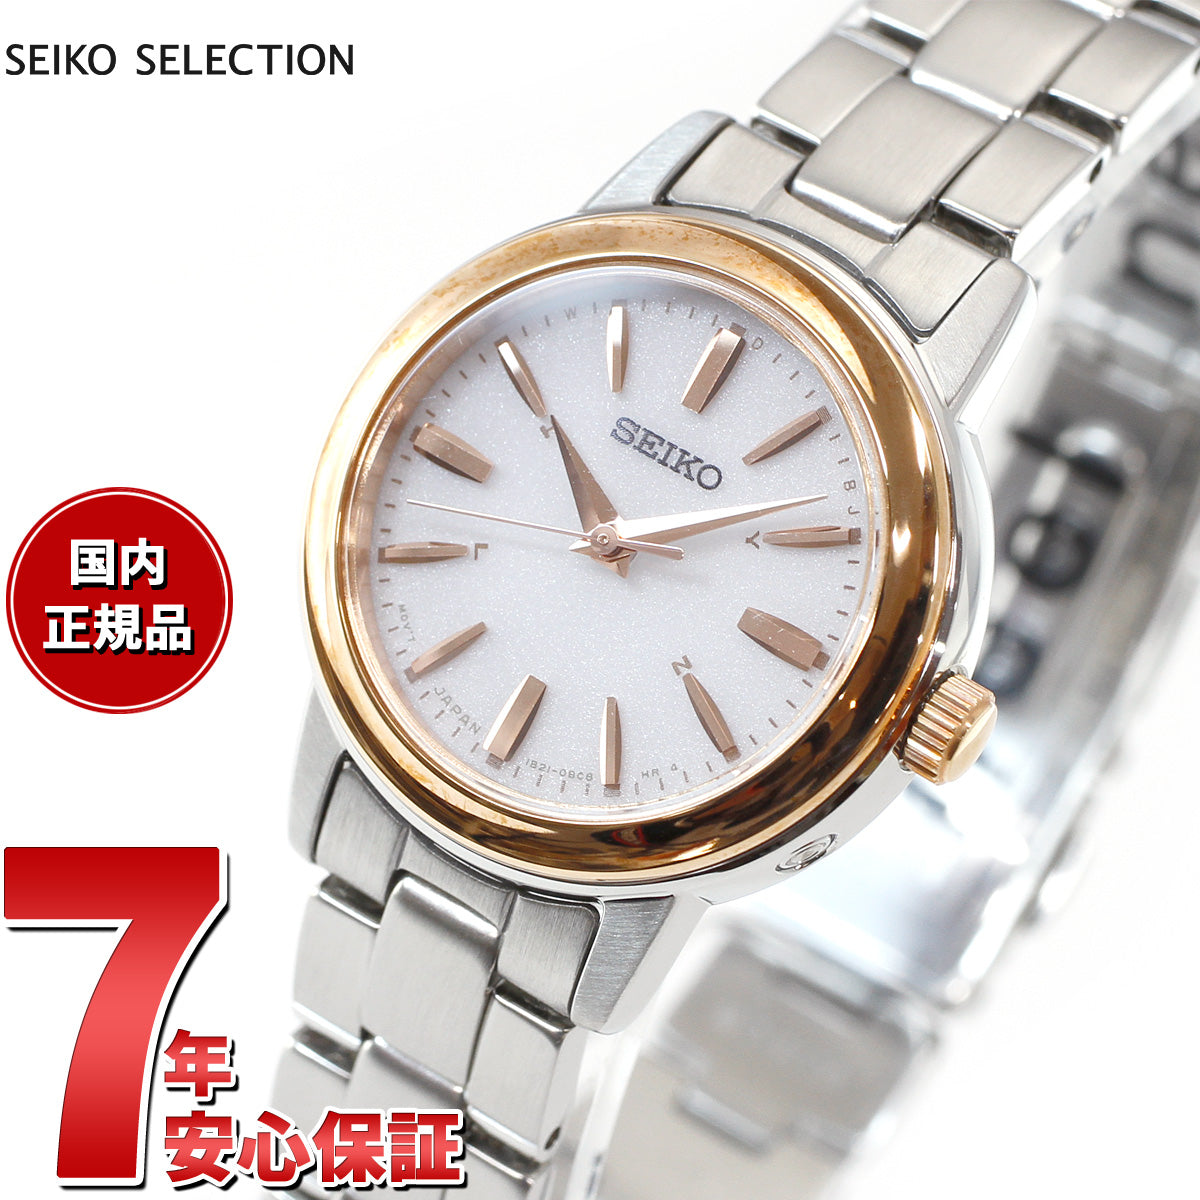 セイコー セレクション SEIKO SELECTION 電波 ソーラー 電波時計 腕時計 レディース ペアウォッチ SSDY018